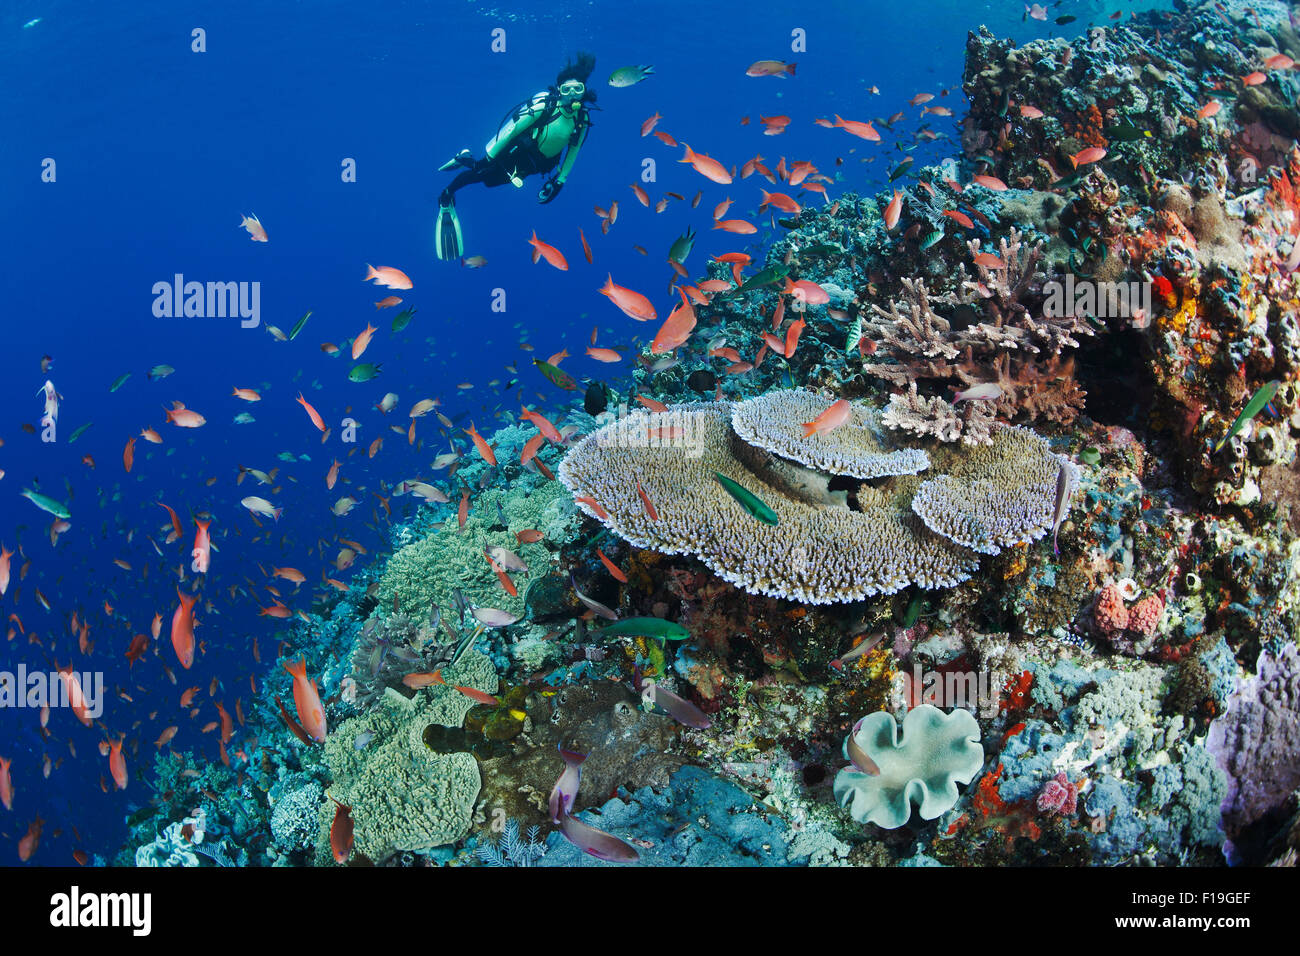 Px0152-D. scuba diver (modèle) parution admire santé des récifs de corail avec diversité de coraux mous et durs et l'abondance de la vie des poissons. Banque D'Images